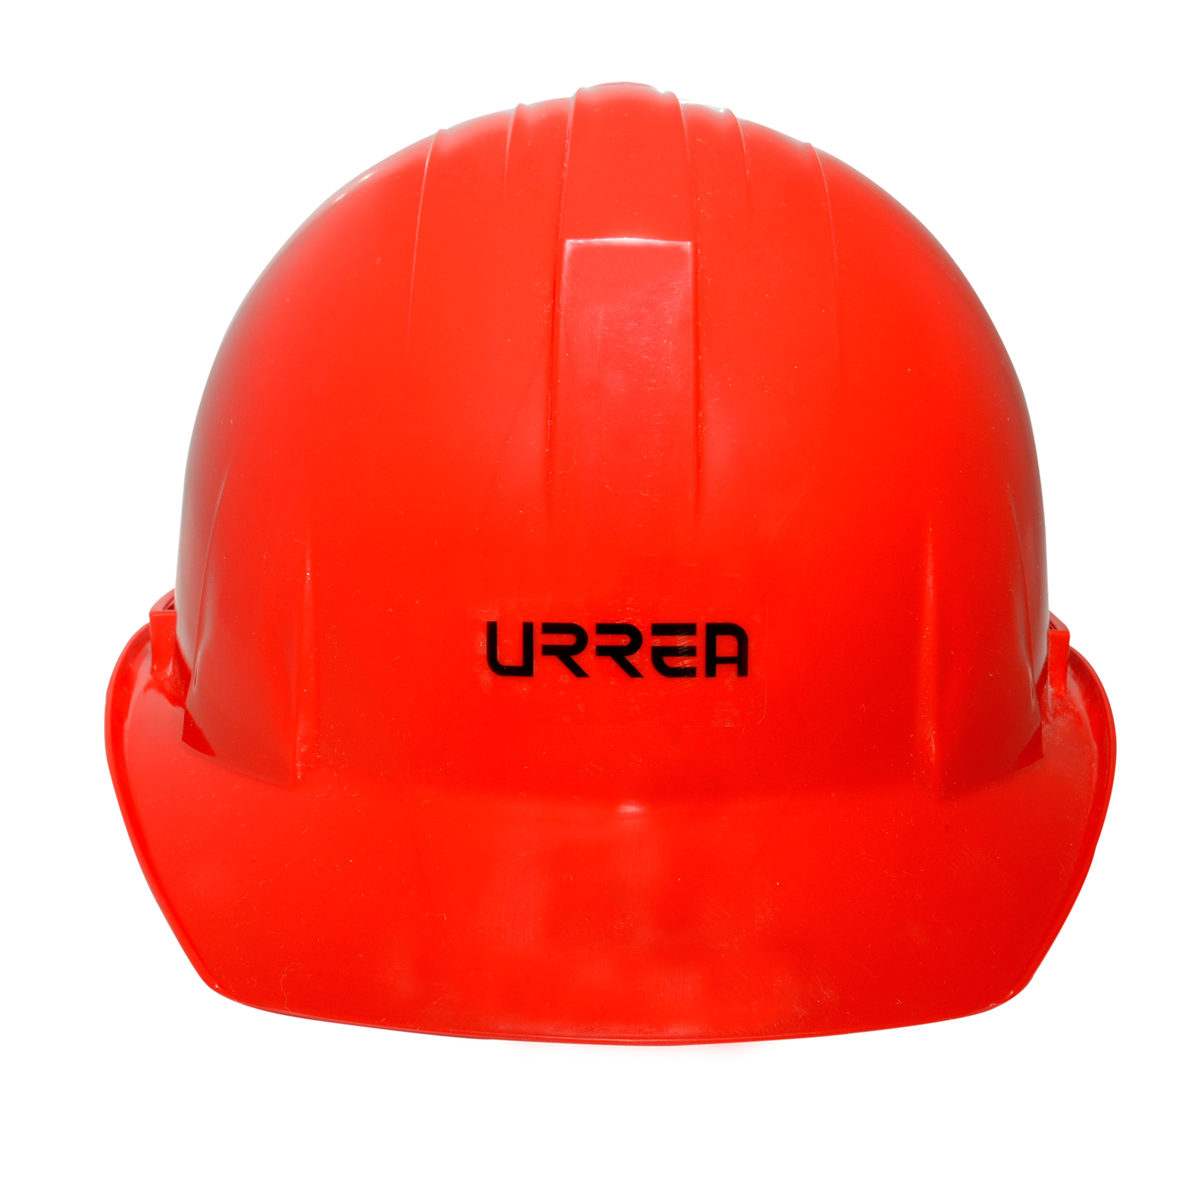 Imagen para Casco de seguridad con ajustede matraca color rojo de Grupo Urrea